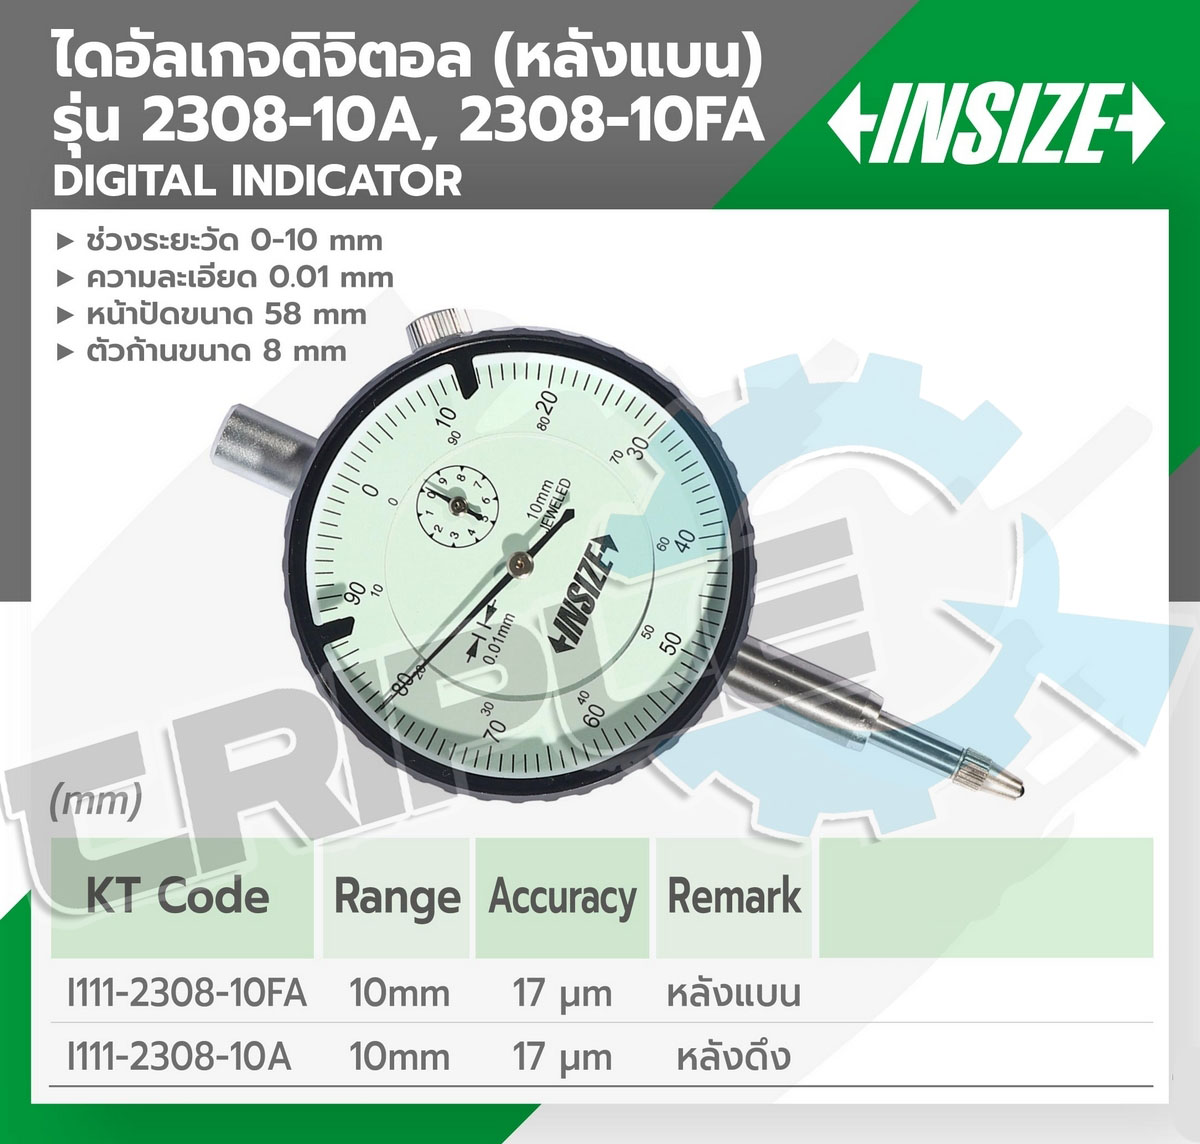 INSIZE - ไดอัลเกจ (หลังดึง) รุ่น 2308-10A ช่วงระยะวัด 0-10 มม. ความละเอียด 0.01 มม.